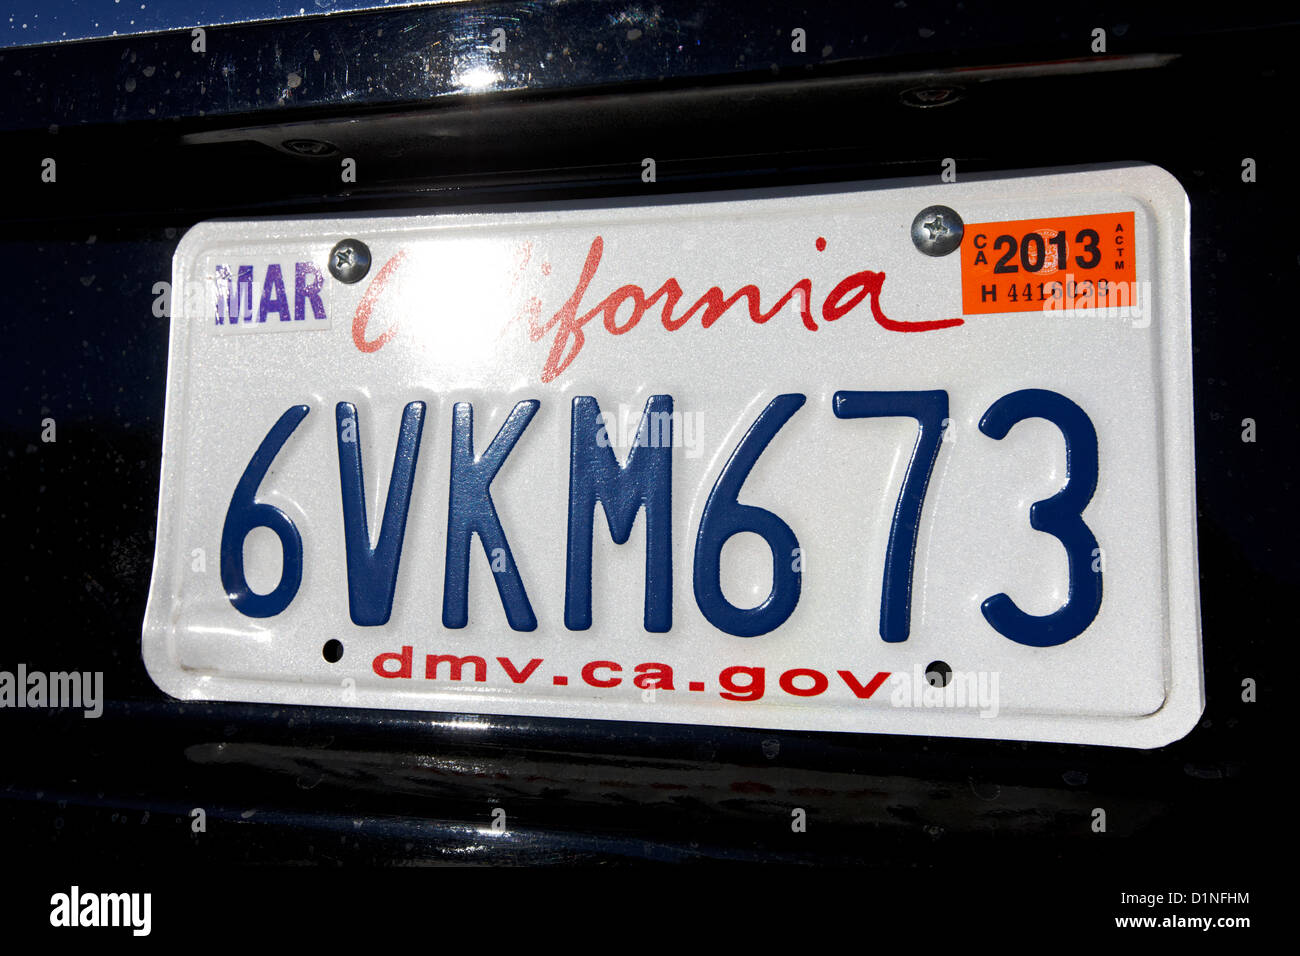 1 California SCHROTT-Nummernschild AUSWAHL % Ein altes KALIFORNIEN Kennzeichen 